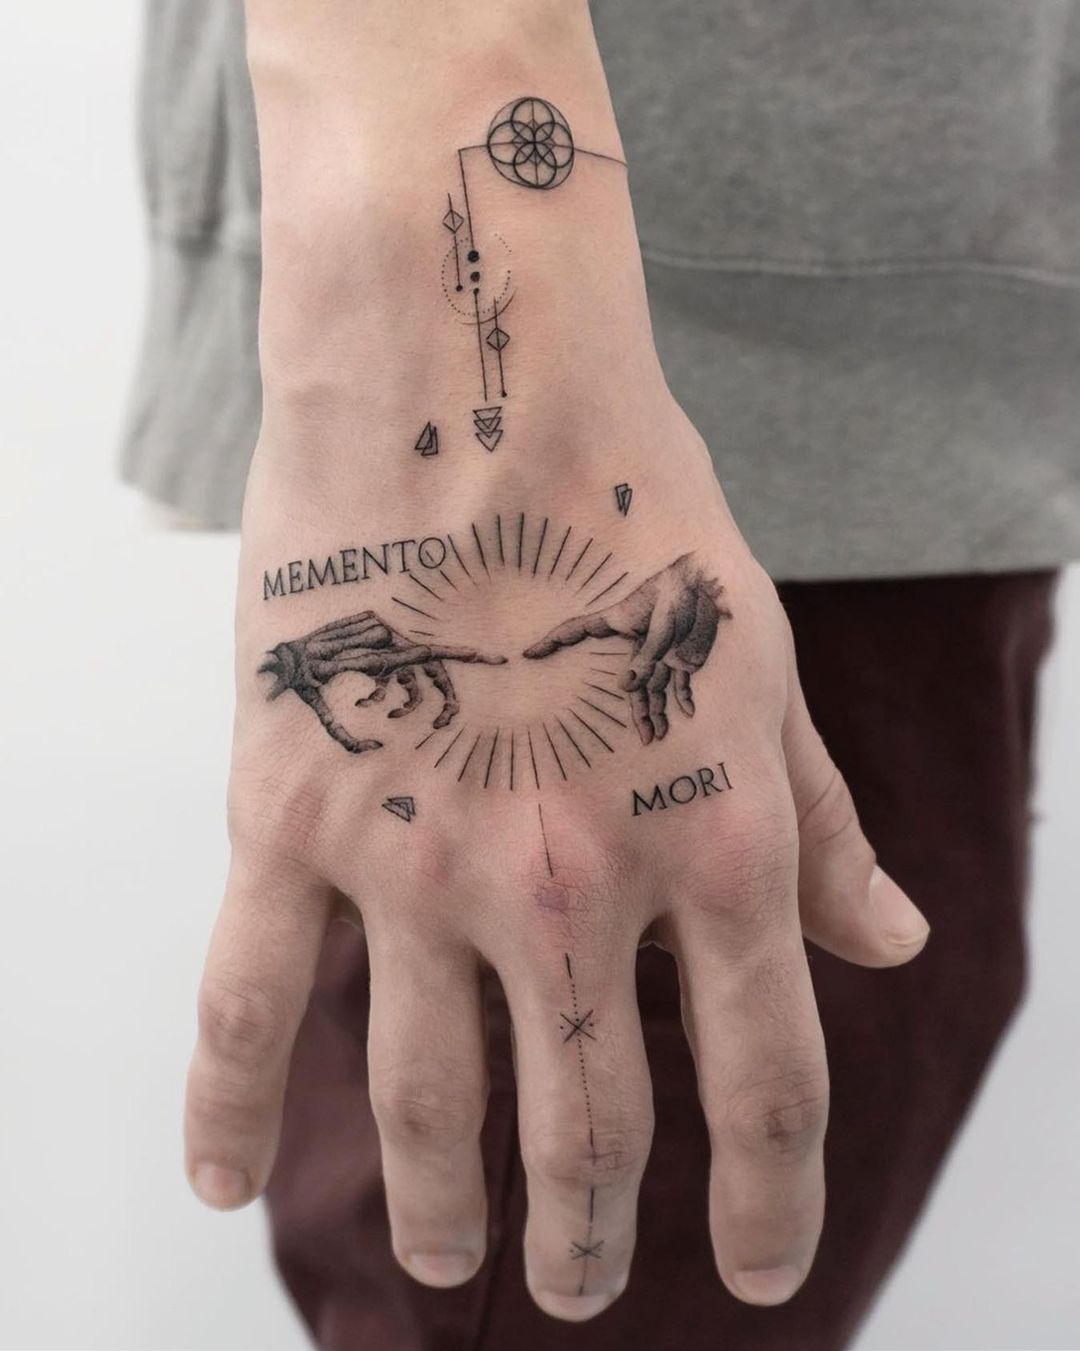 Guiding Compass Memento Mori Hand Tattoo